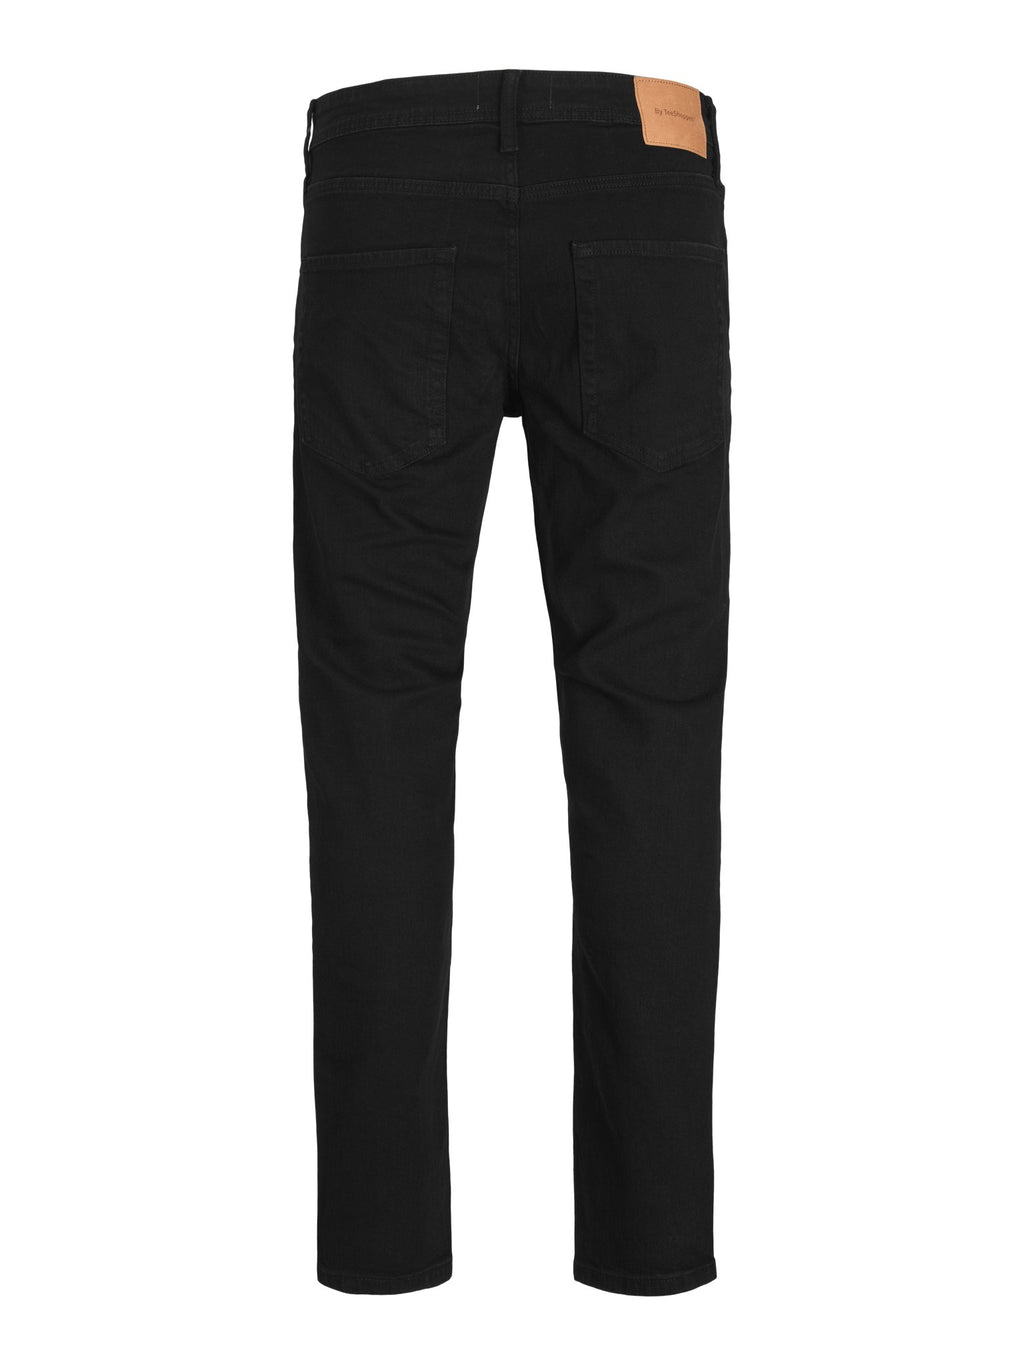 Les jeans de performance originaux (réguliers) - Black Denim